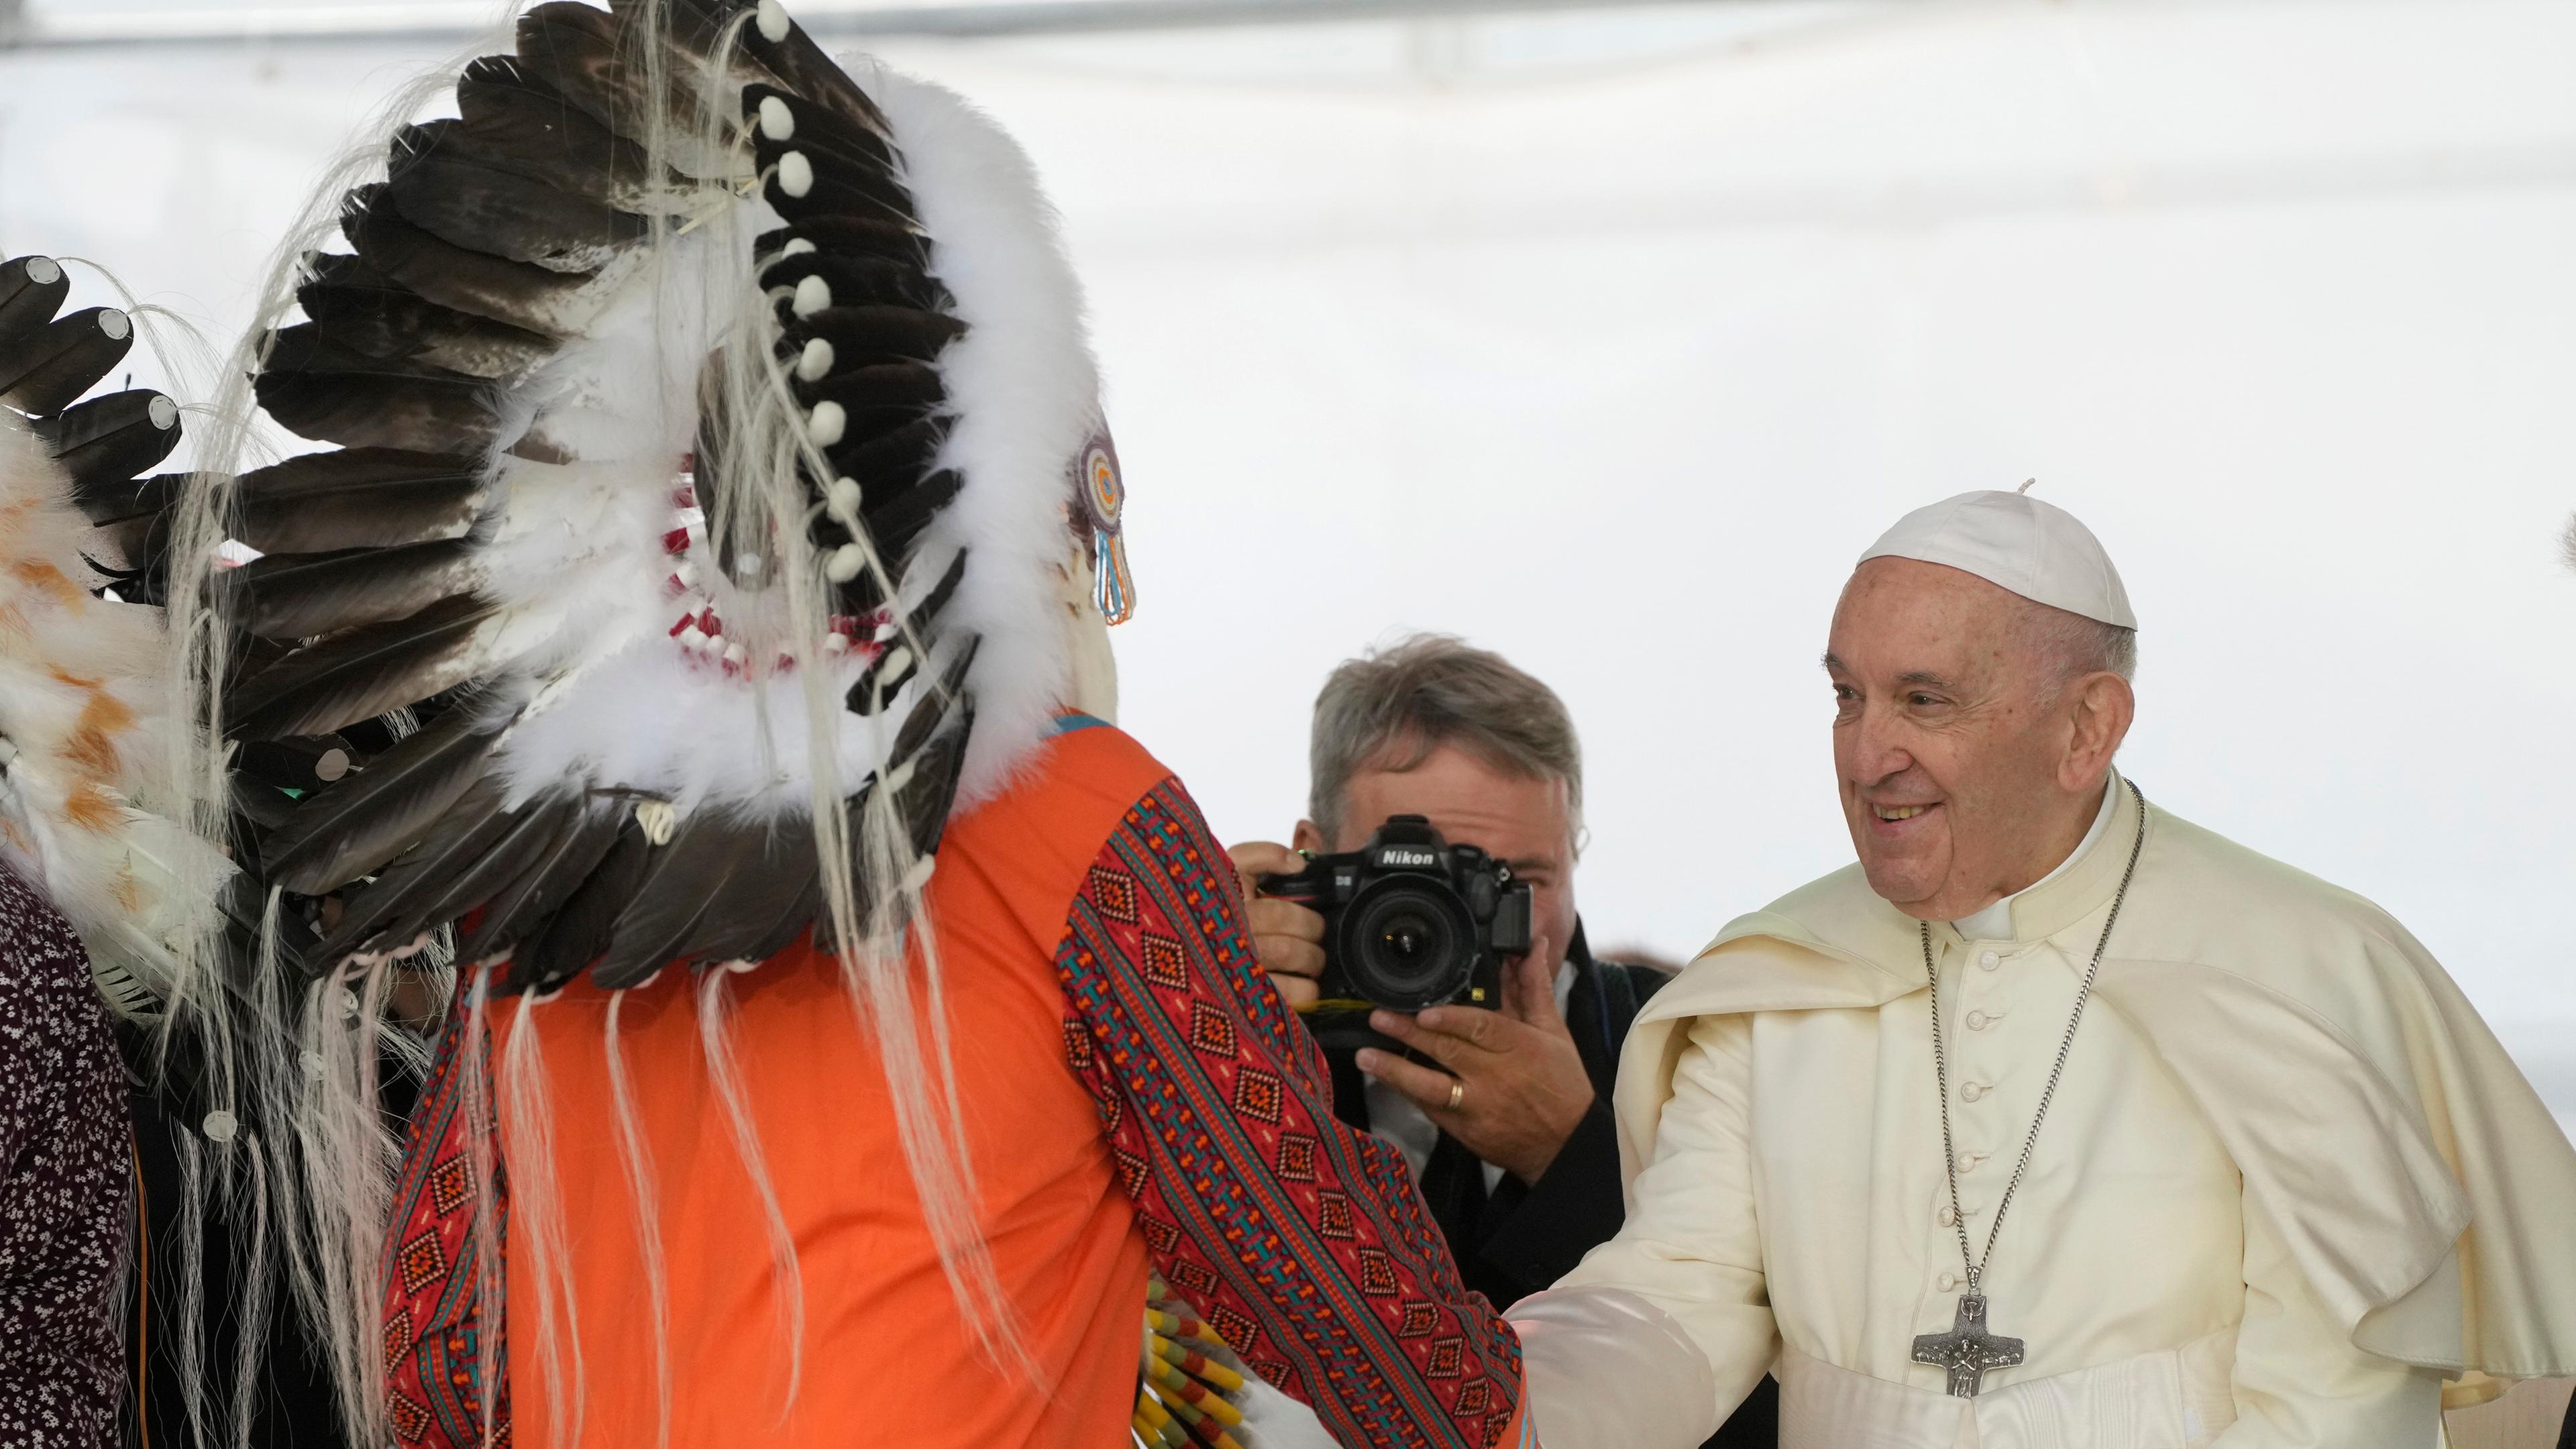 Papst Franziskus schüttelt einem Mitglied der Indigenen Gemeinschaft in Kanada die Hand